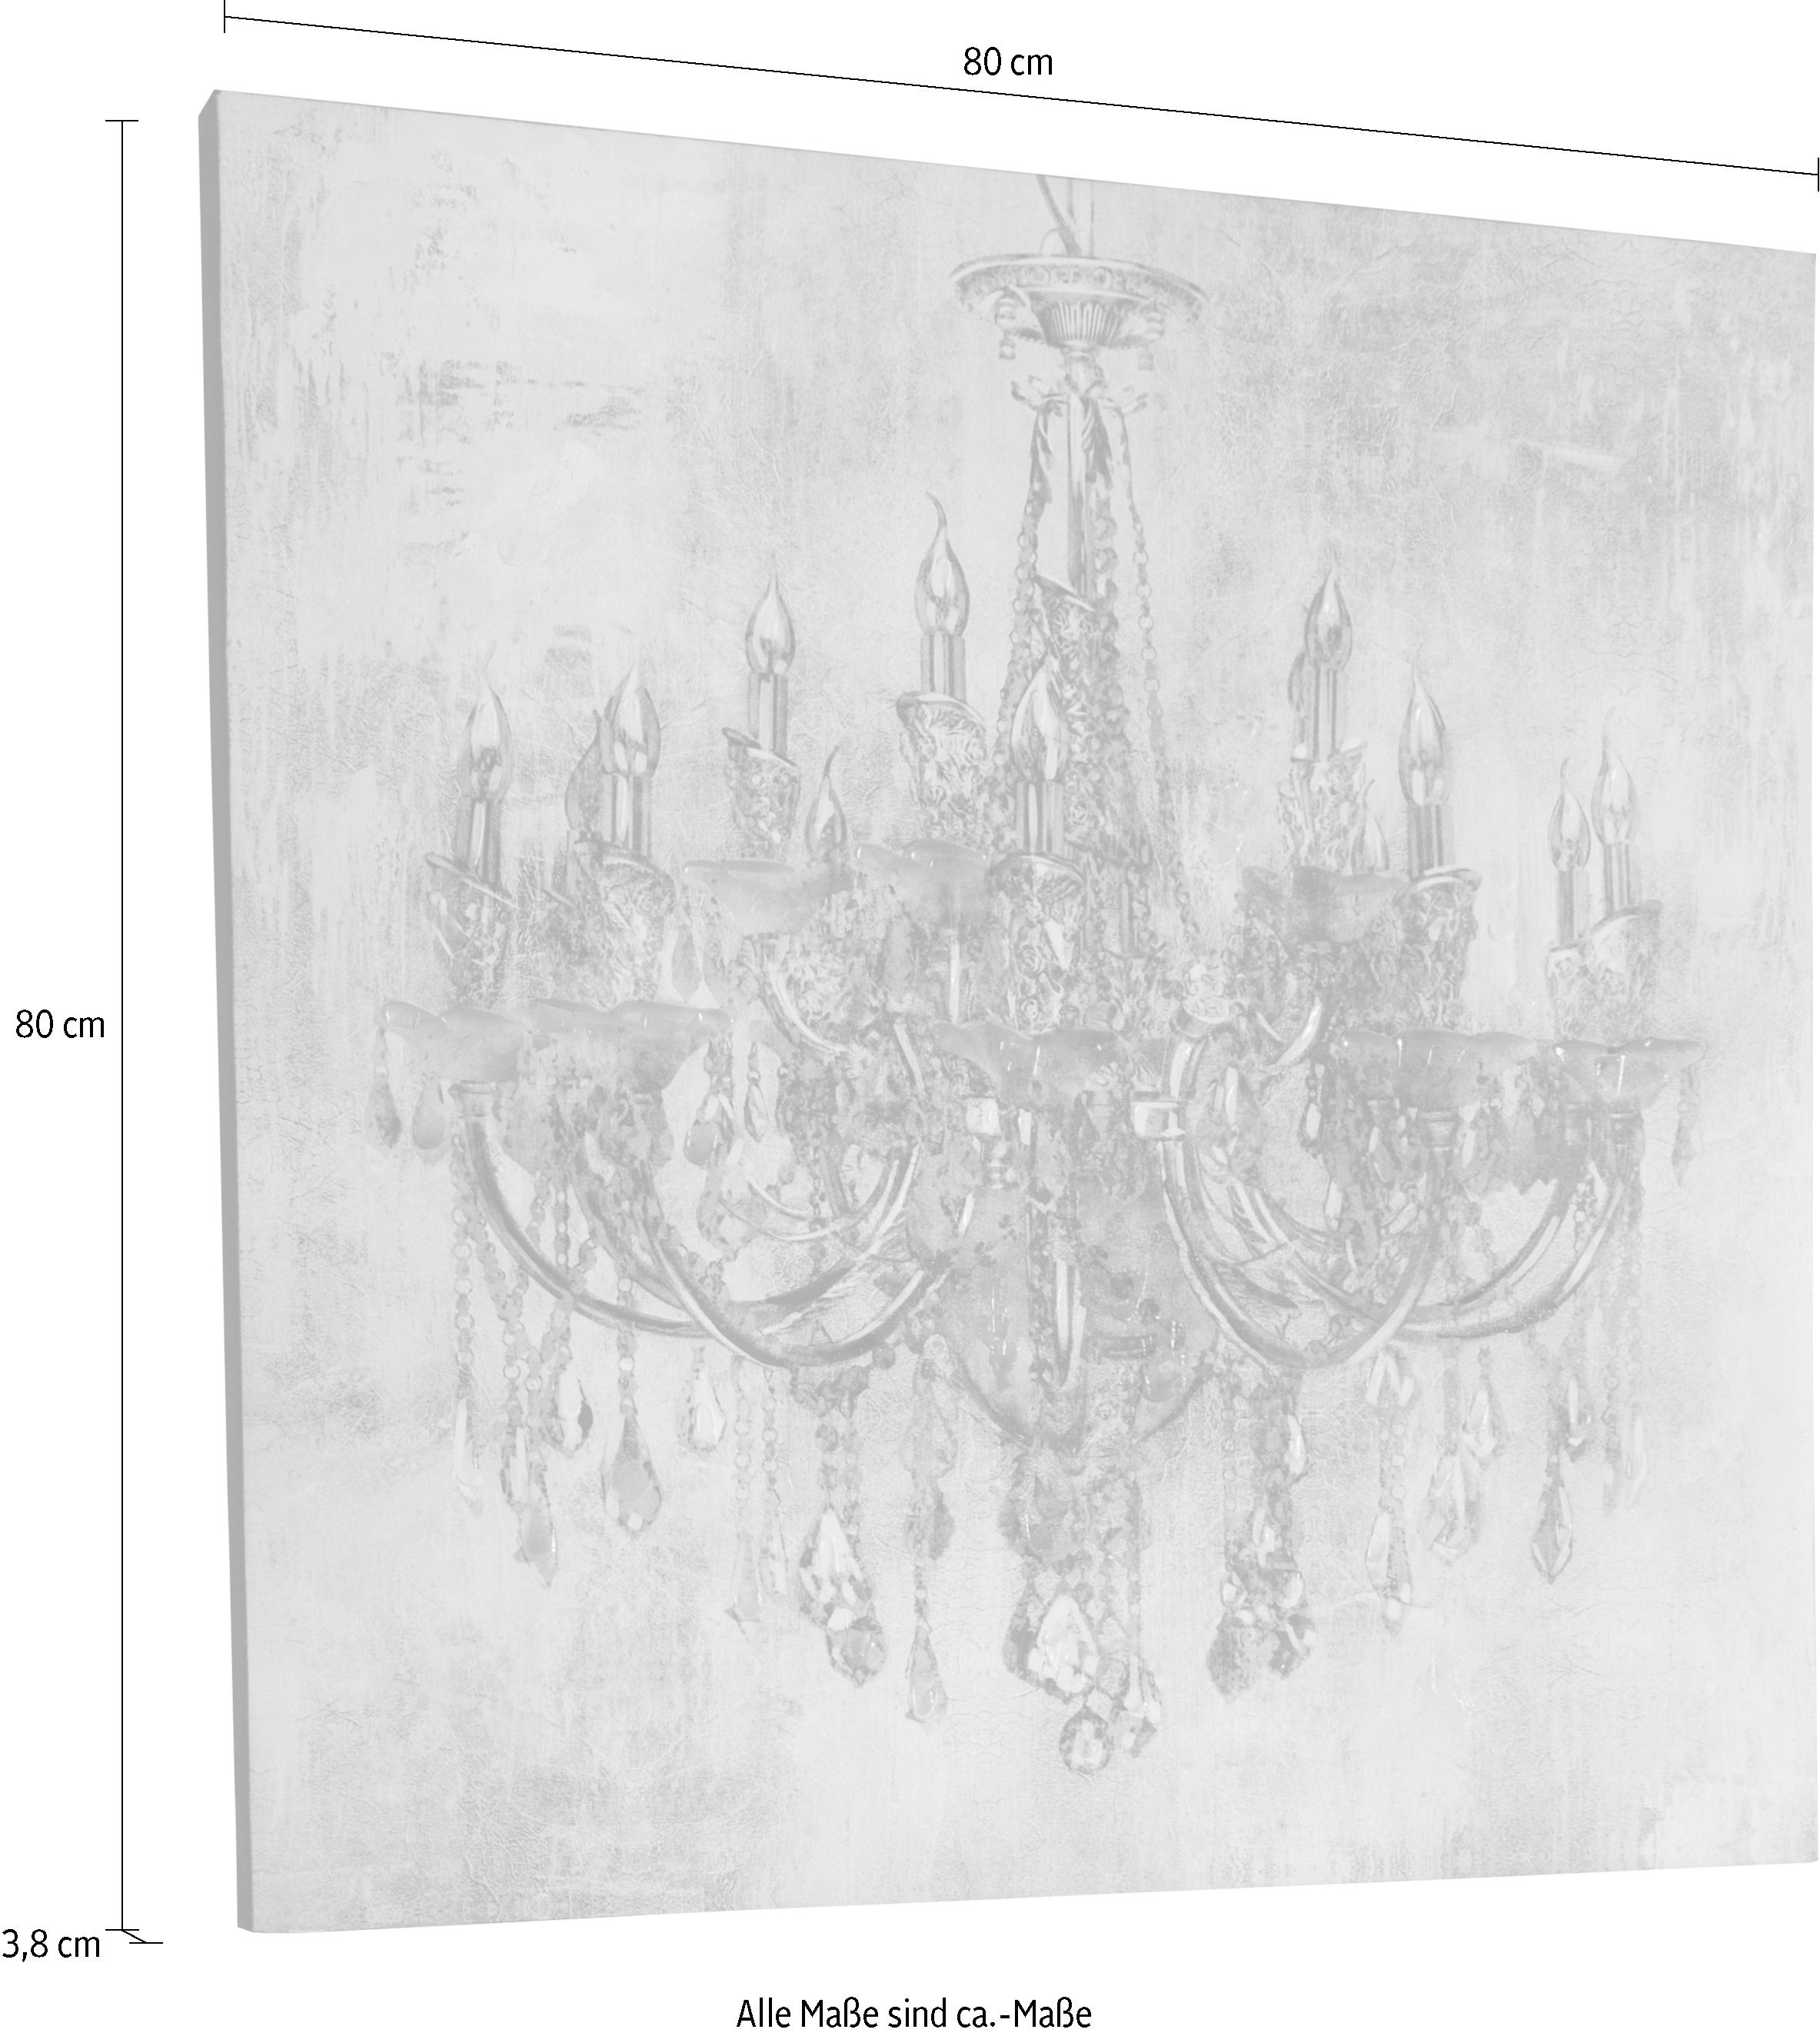 Myflair Möbel & Accessoires Ölbild »Candela«, Gemälde, Bild auf Leinwand,  Motiv Kronleuchter, 80x80 cm, Wohnzimmer jetzt kaufen